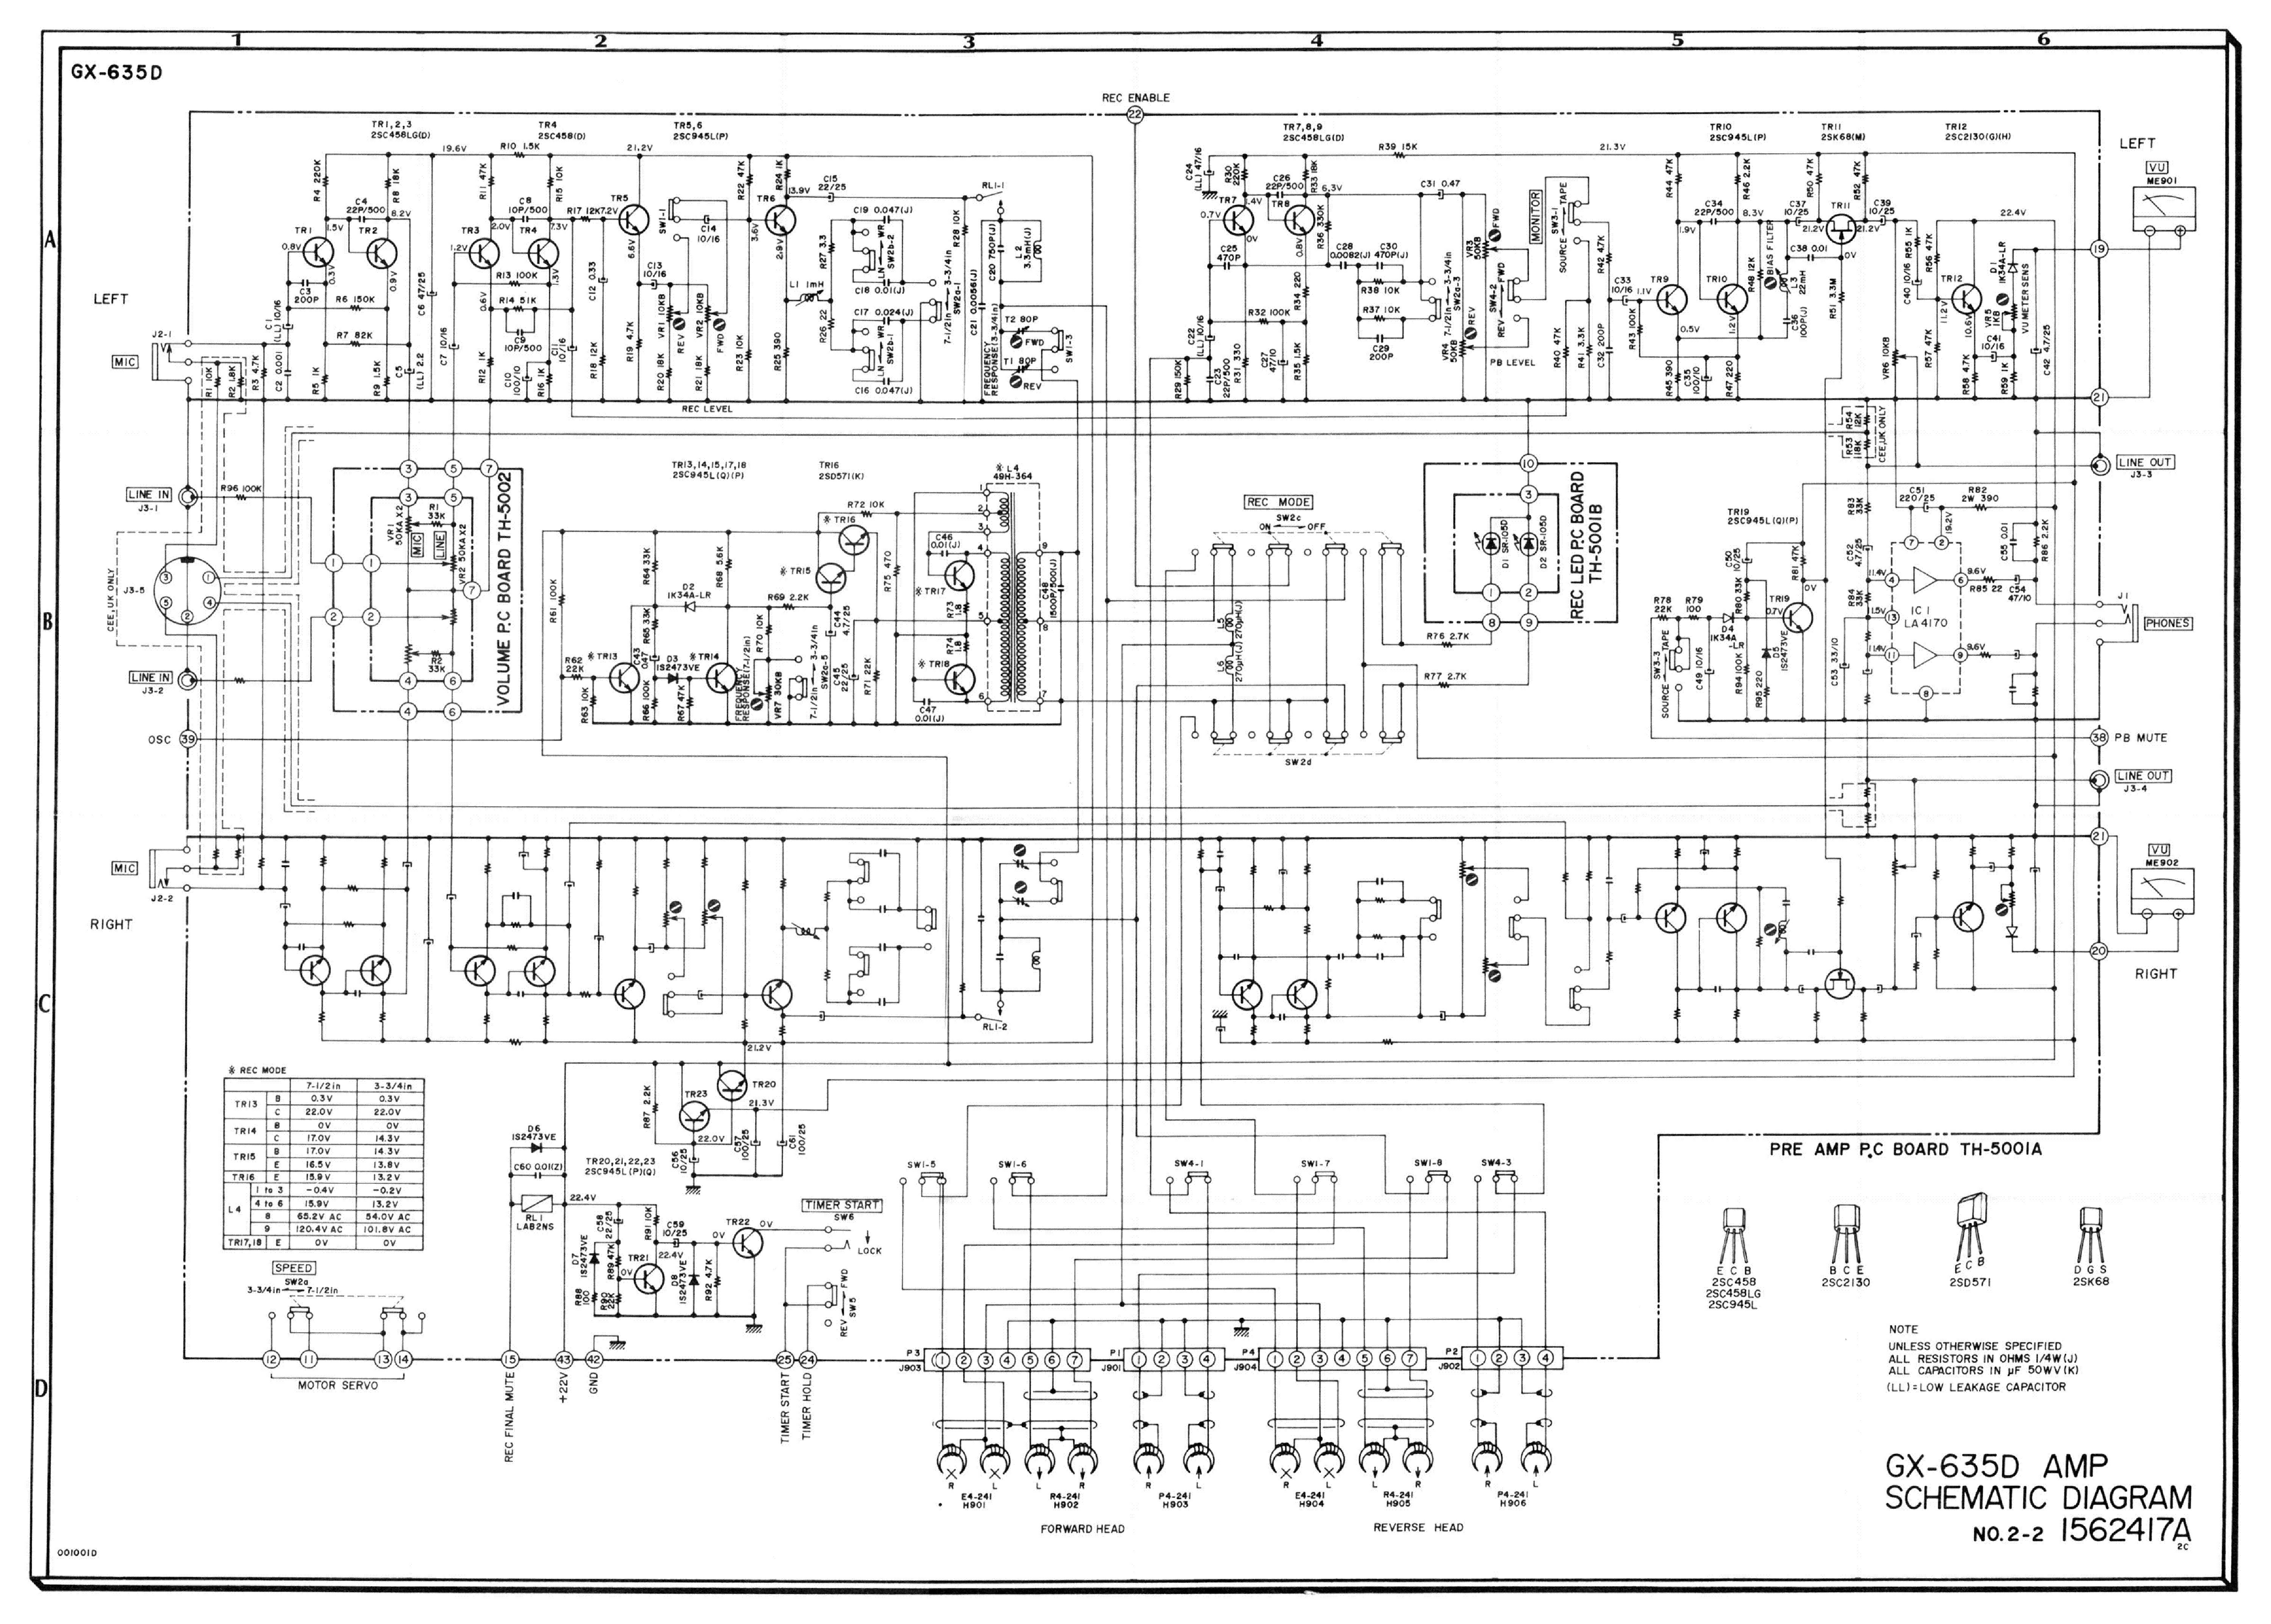 Service Schema/Schematics Diagram für Akai GX-635DB 